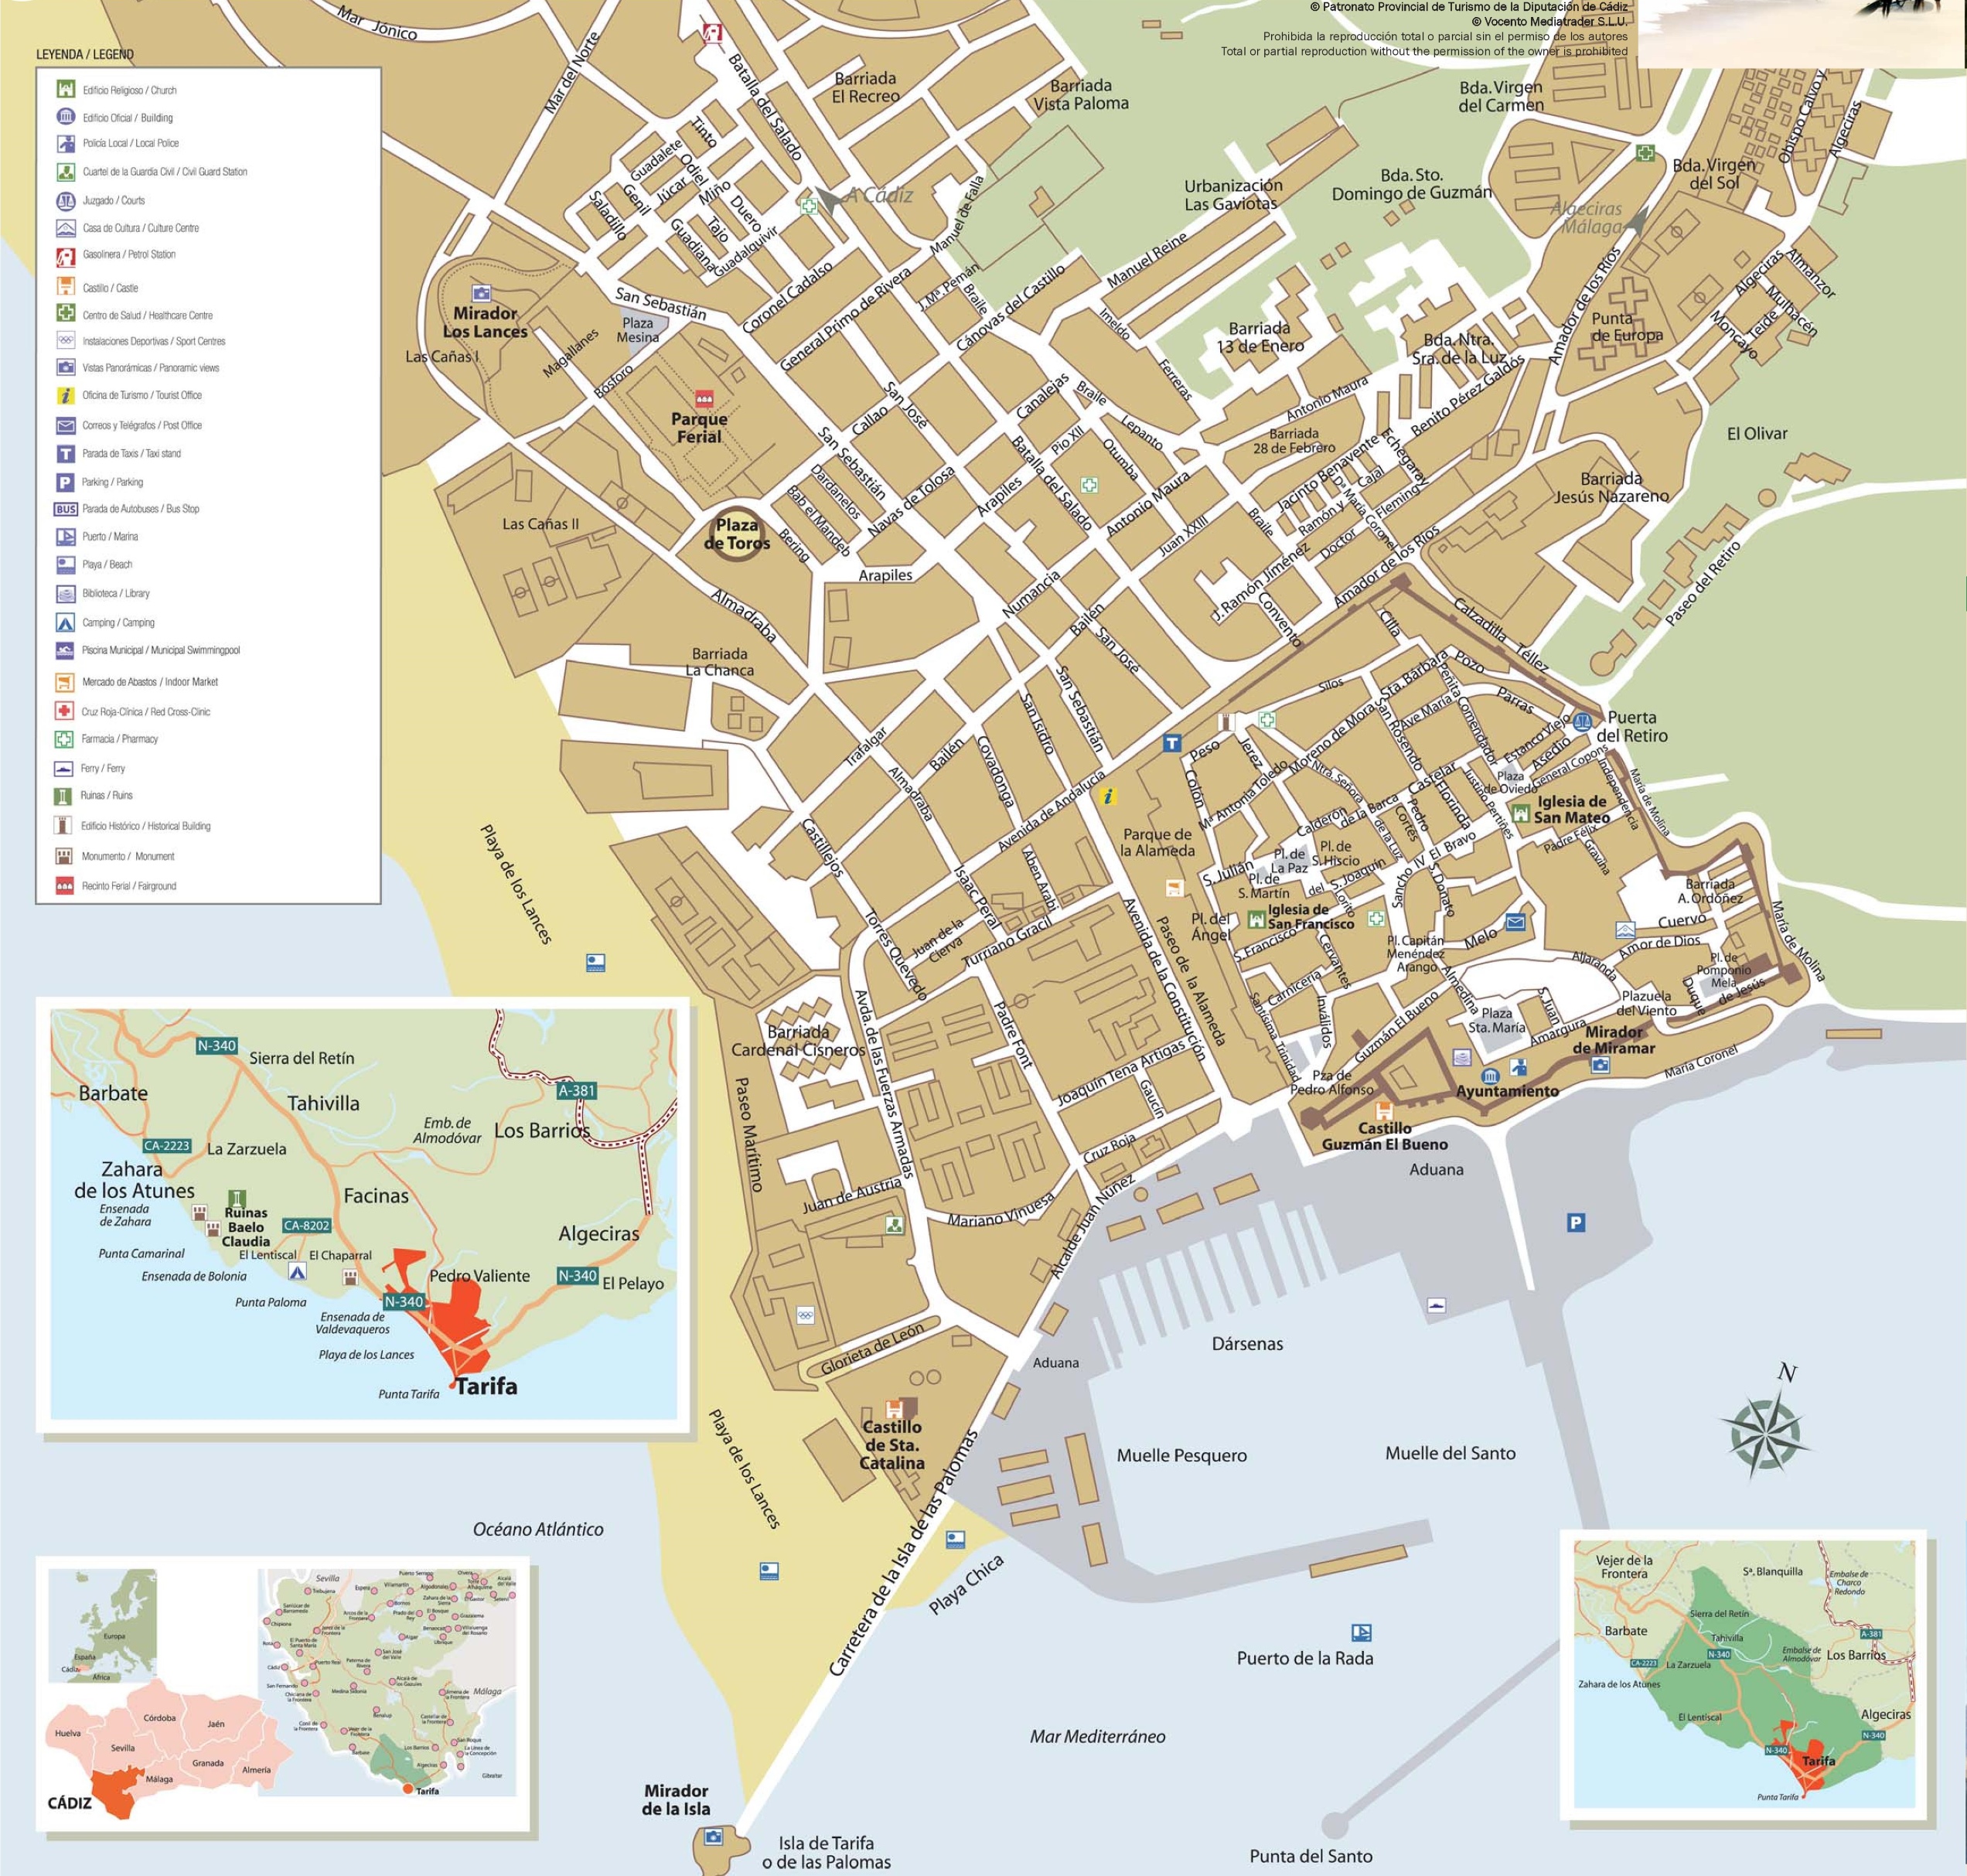 Tarifa tourist map2544 x 2426